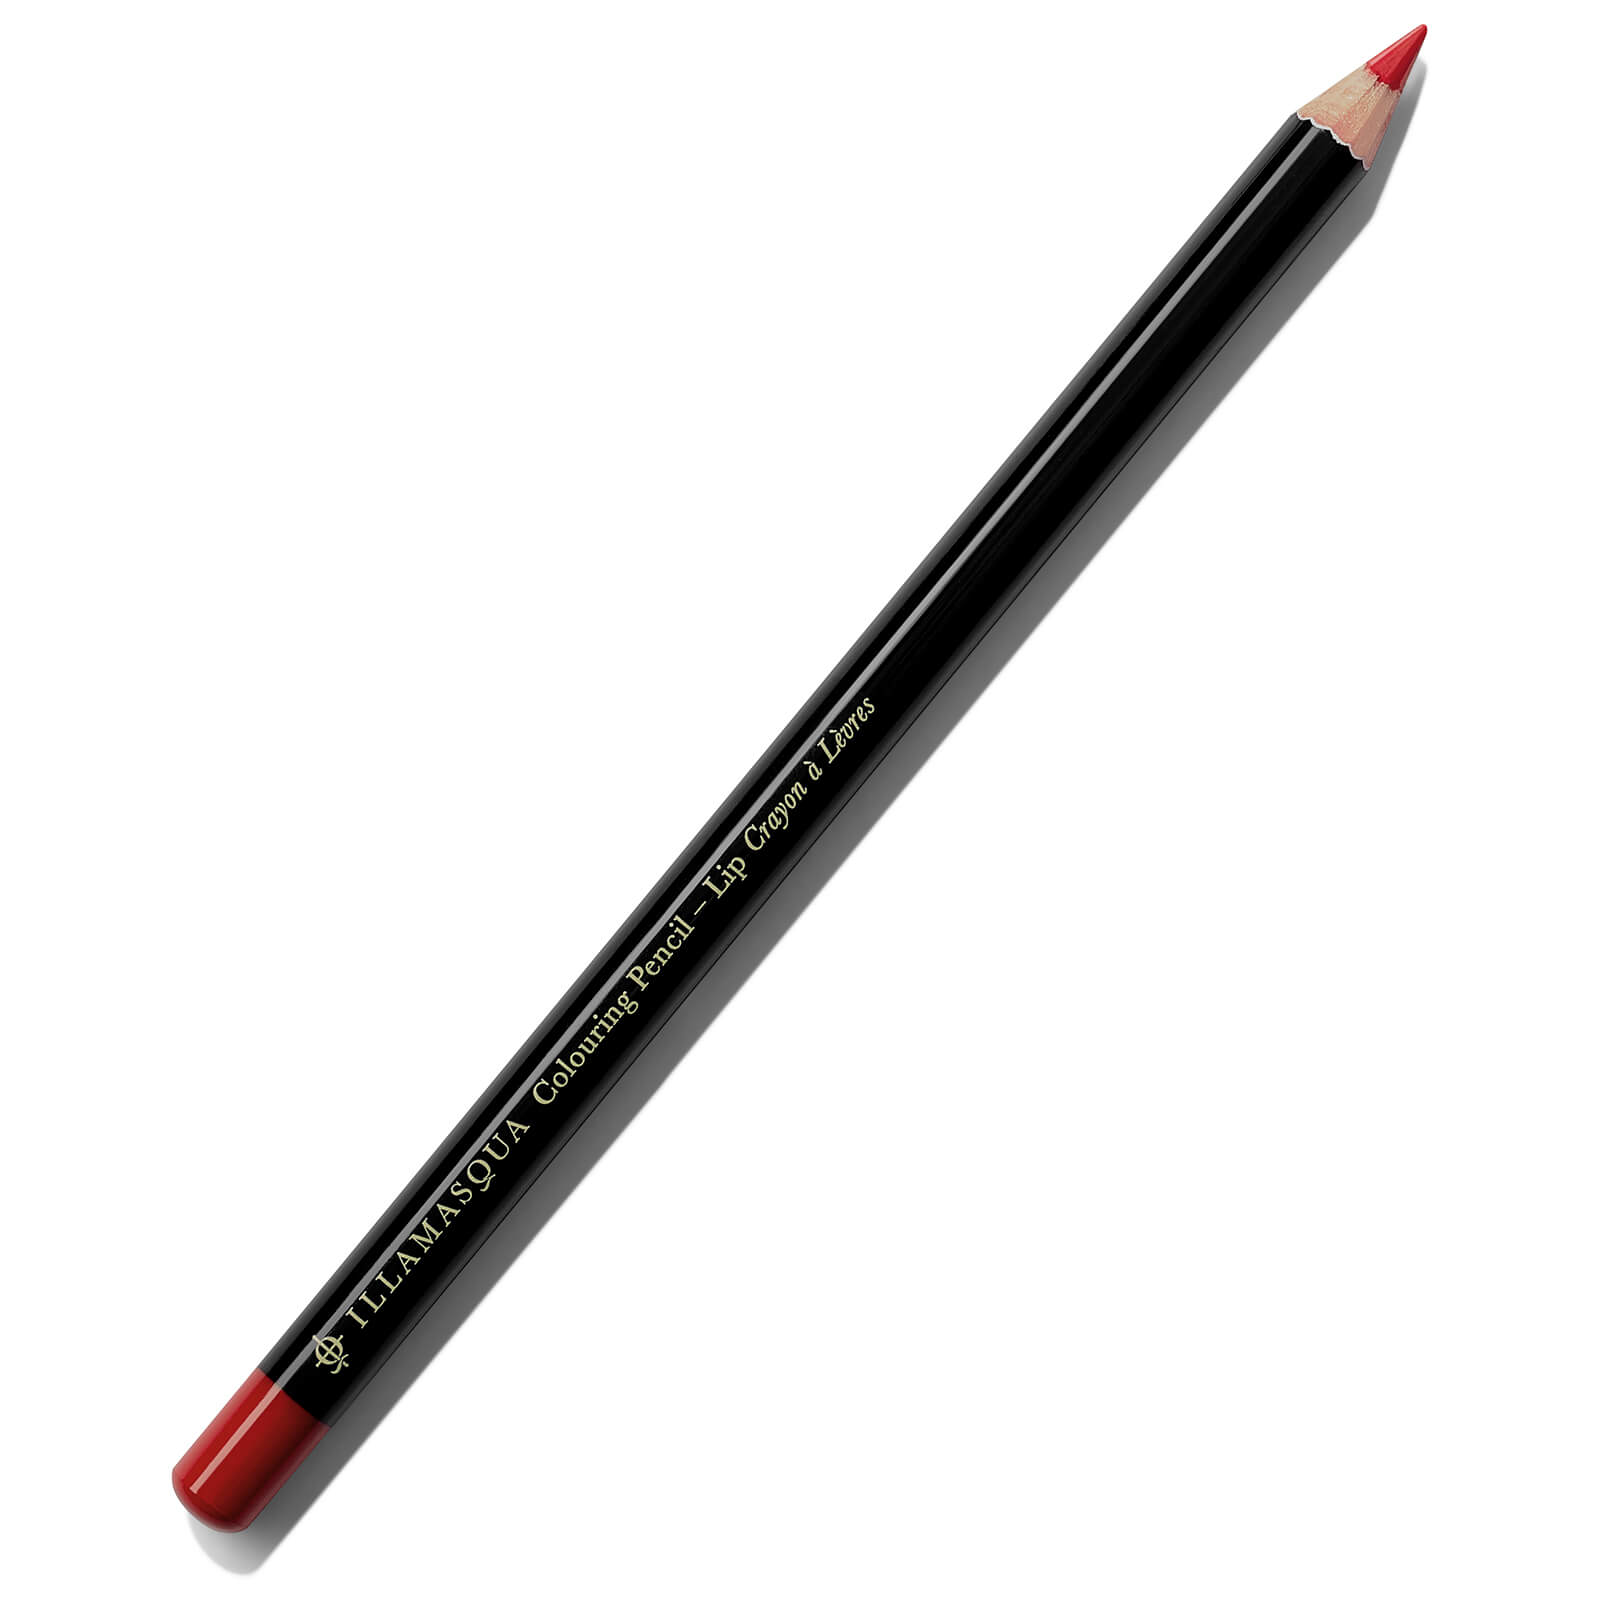 Illamasqua Colouring Lip Pencil 1.4g (Various Shades) - Creative